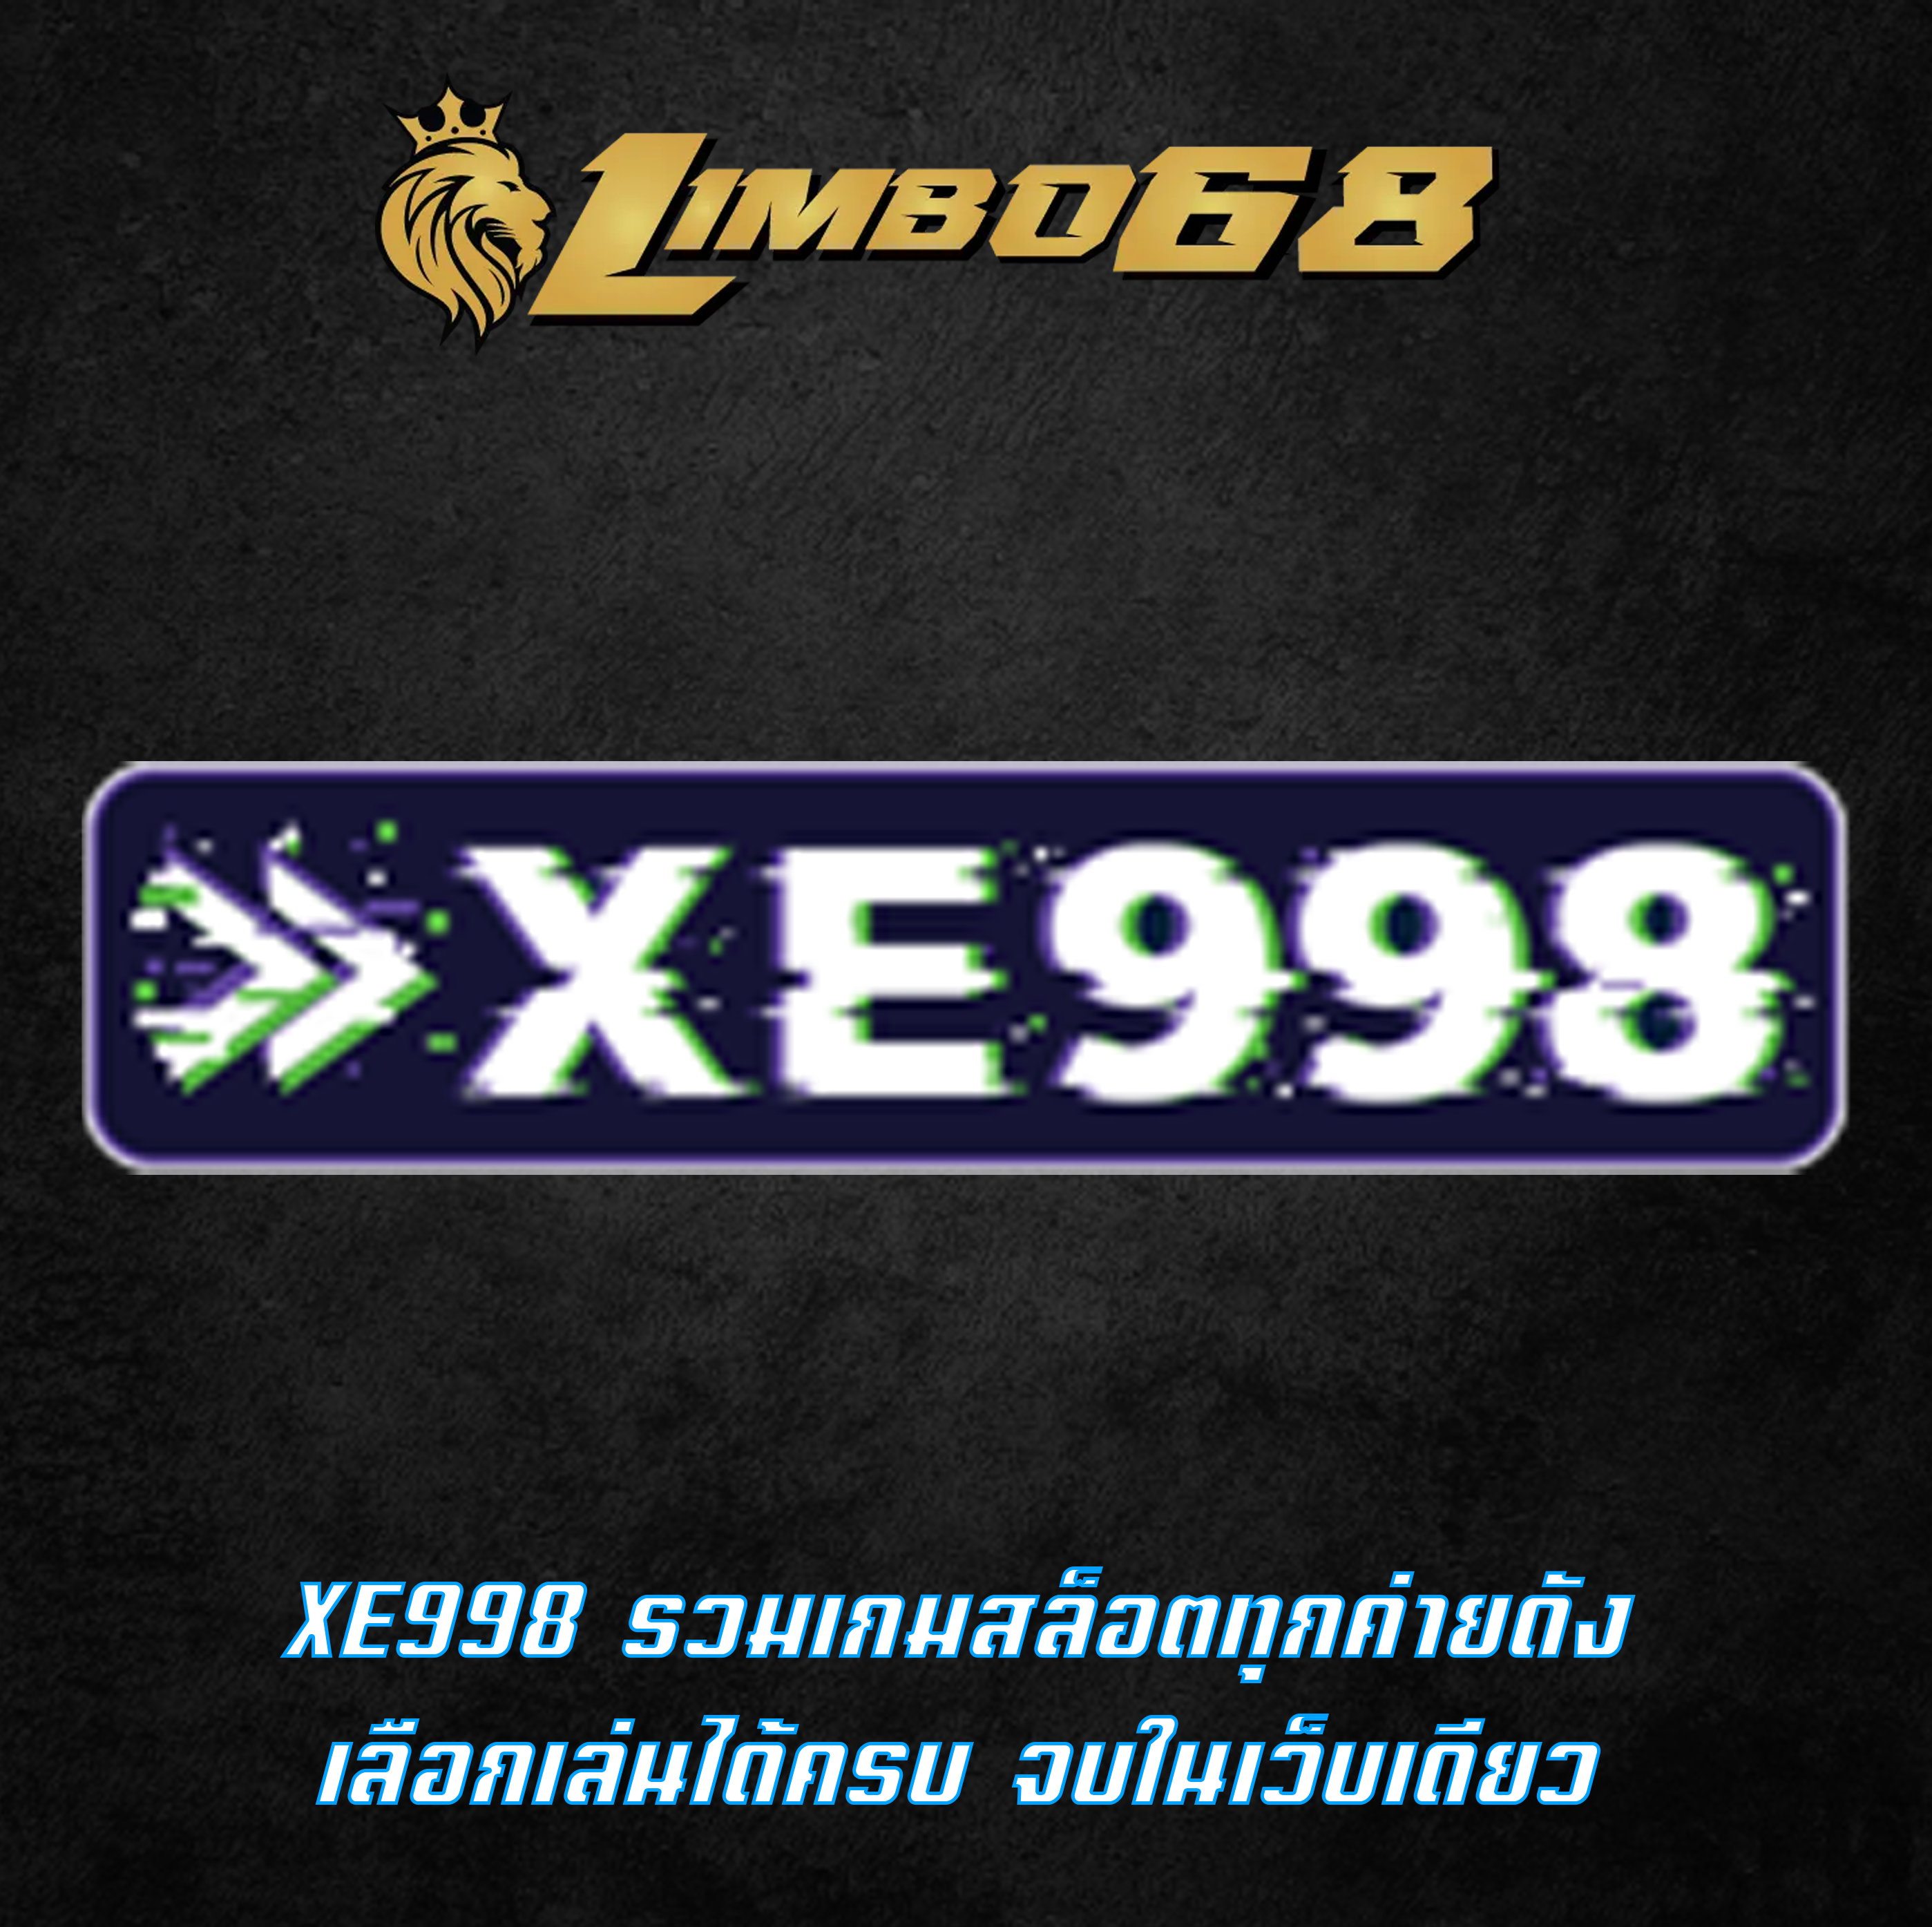 XE998